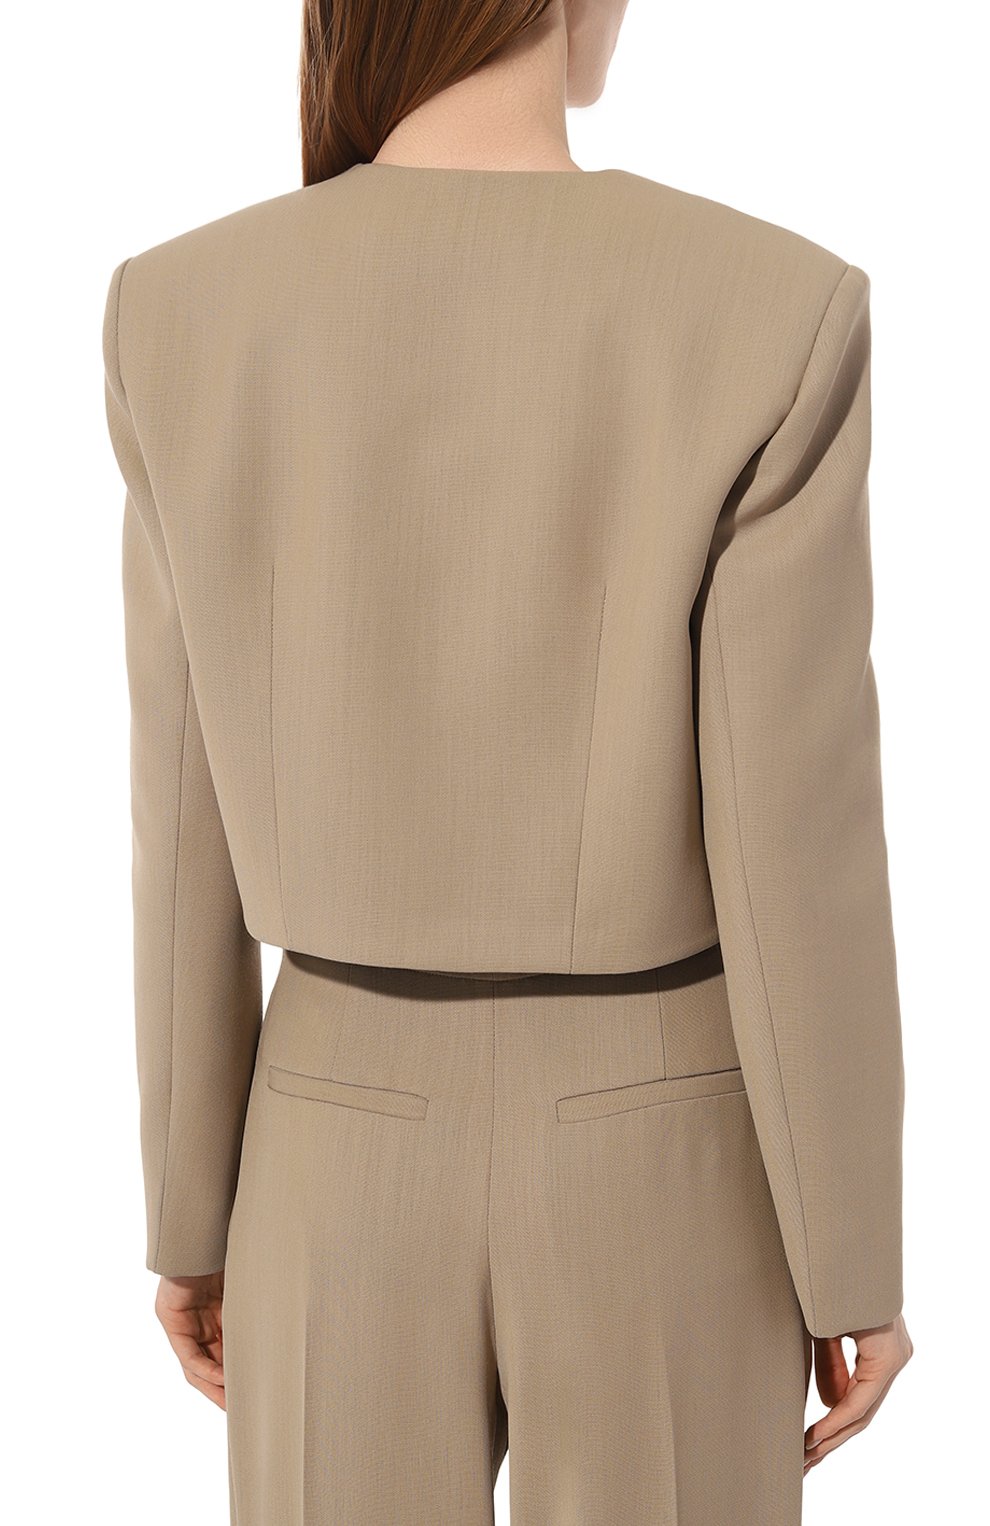 Укороченный, асимметричный, приталенный: какой пиджак носить этой весной? Выбор Ксении Ярёма (фото 4)